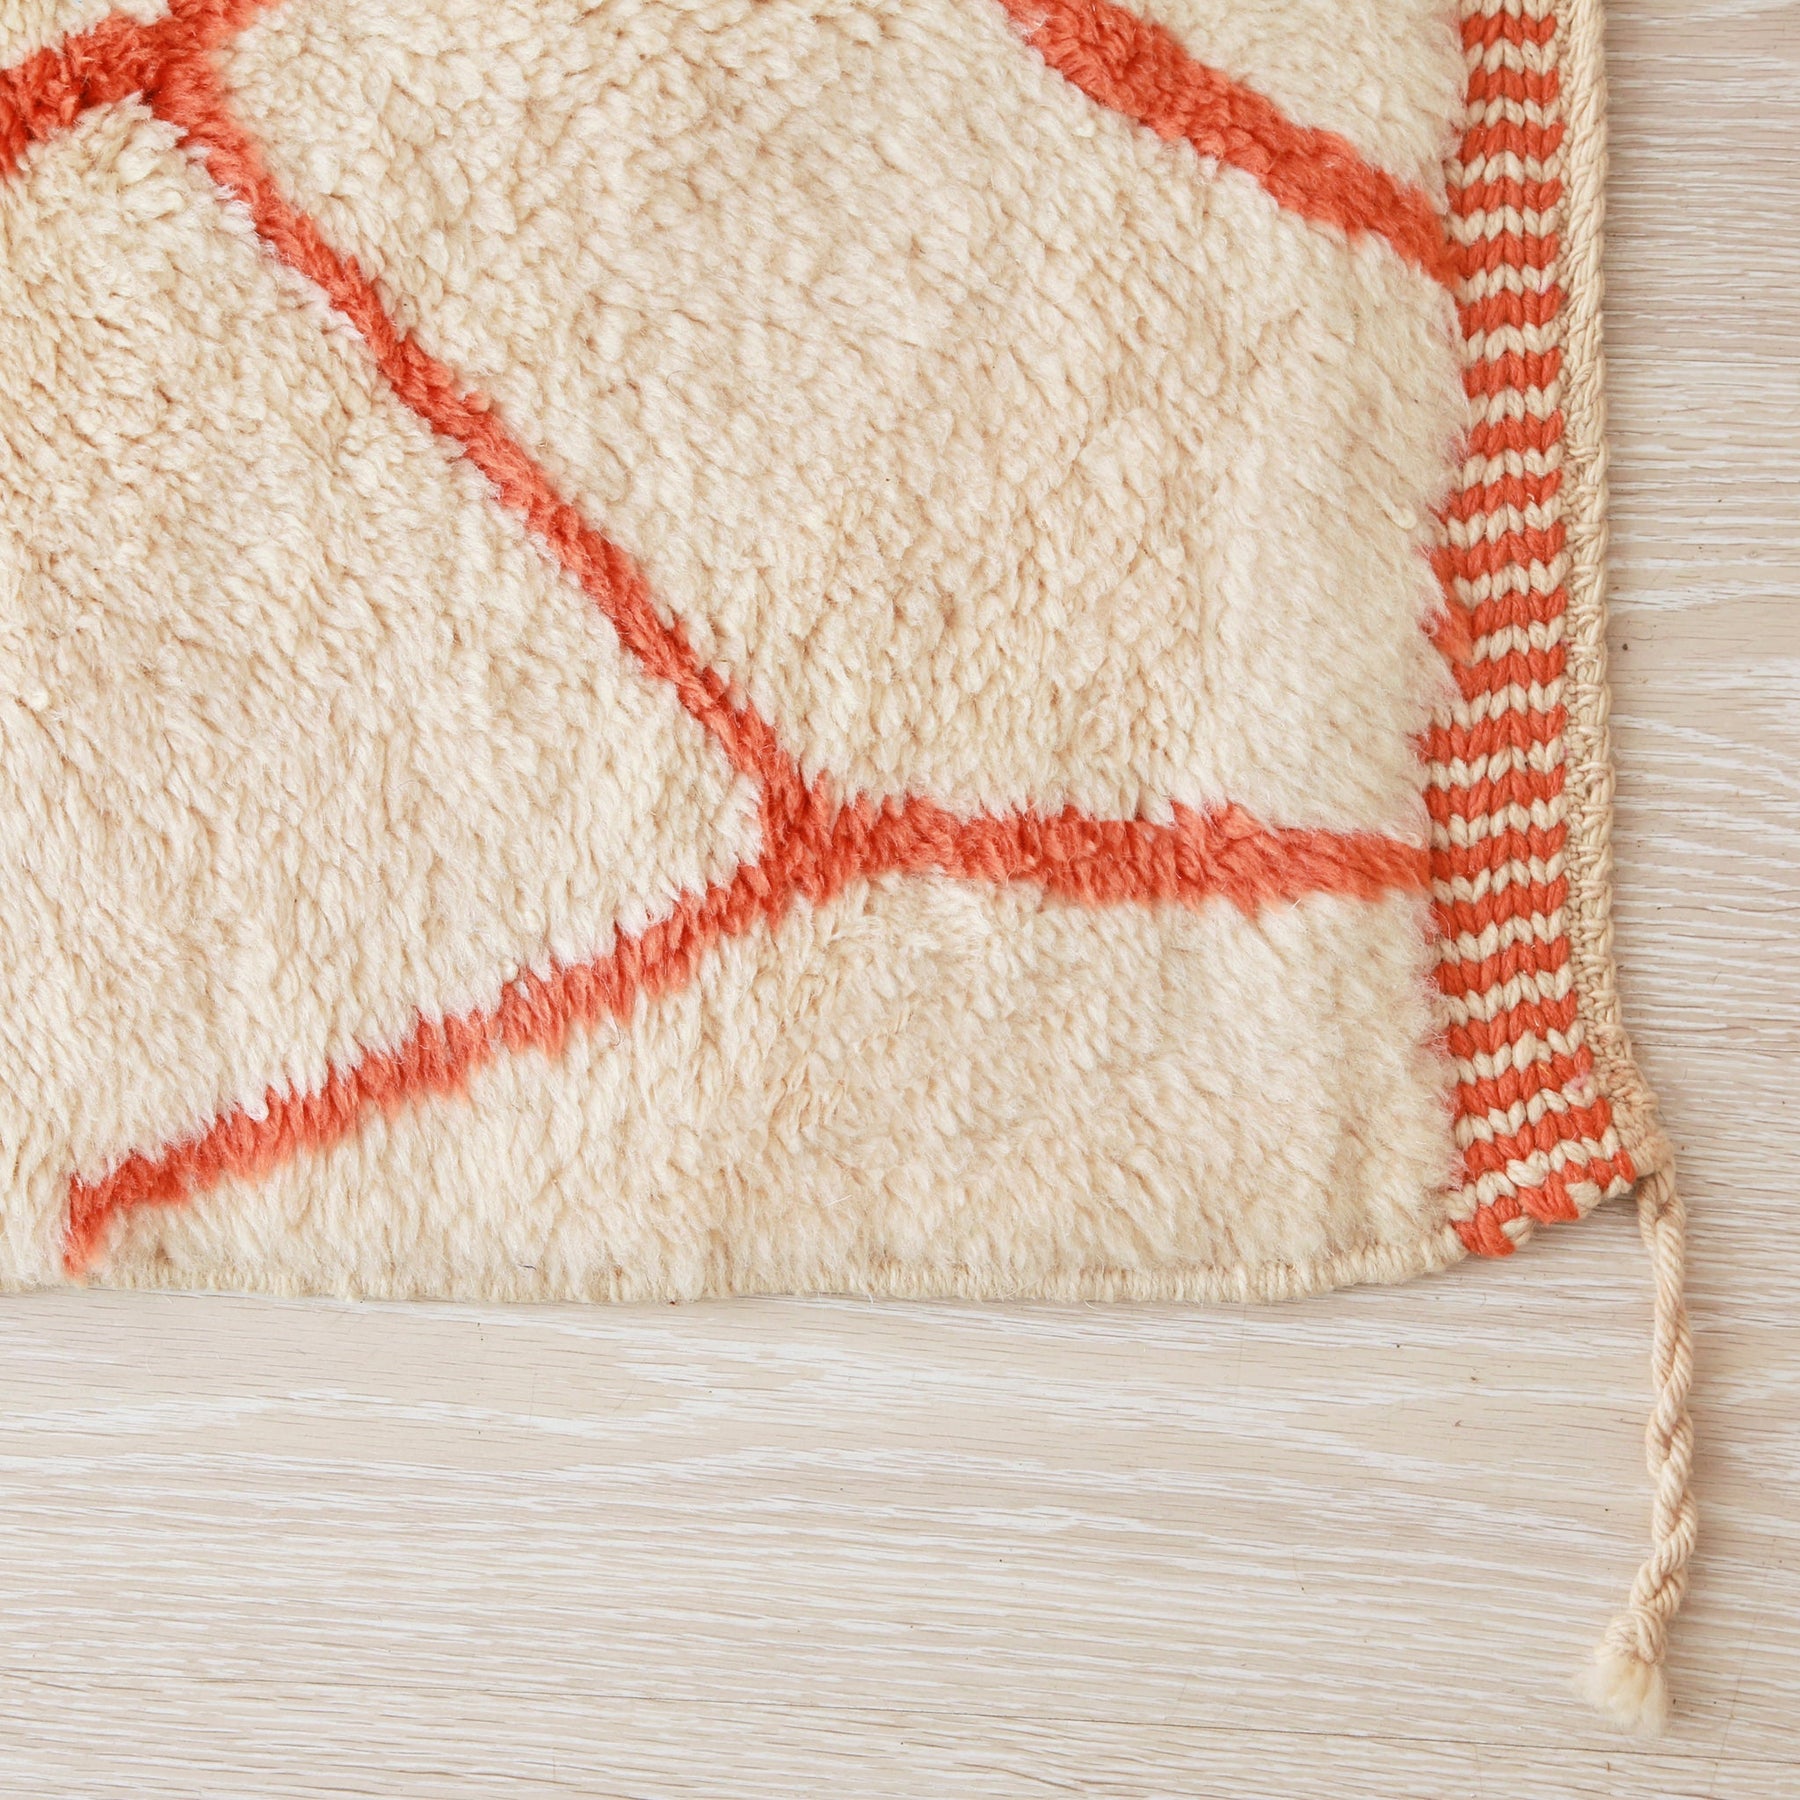 Dettaglio dell'angolo del tappeto senza frangia, ma con il bordo arancione